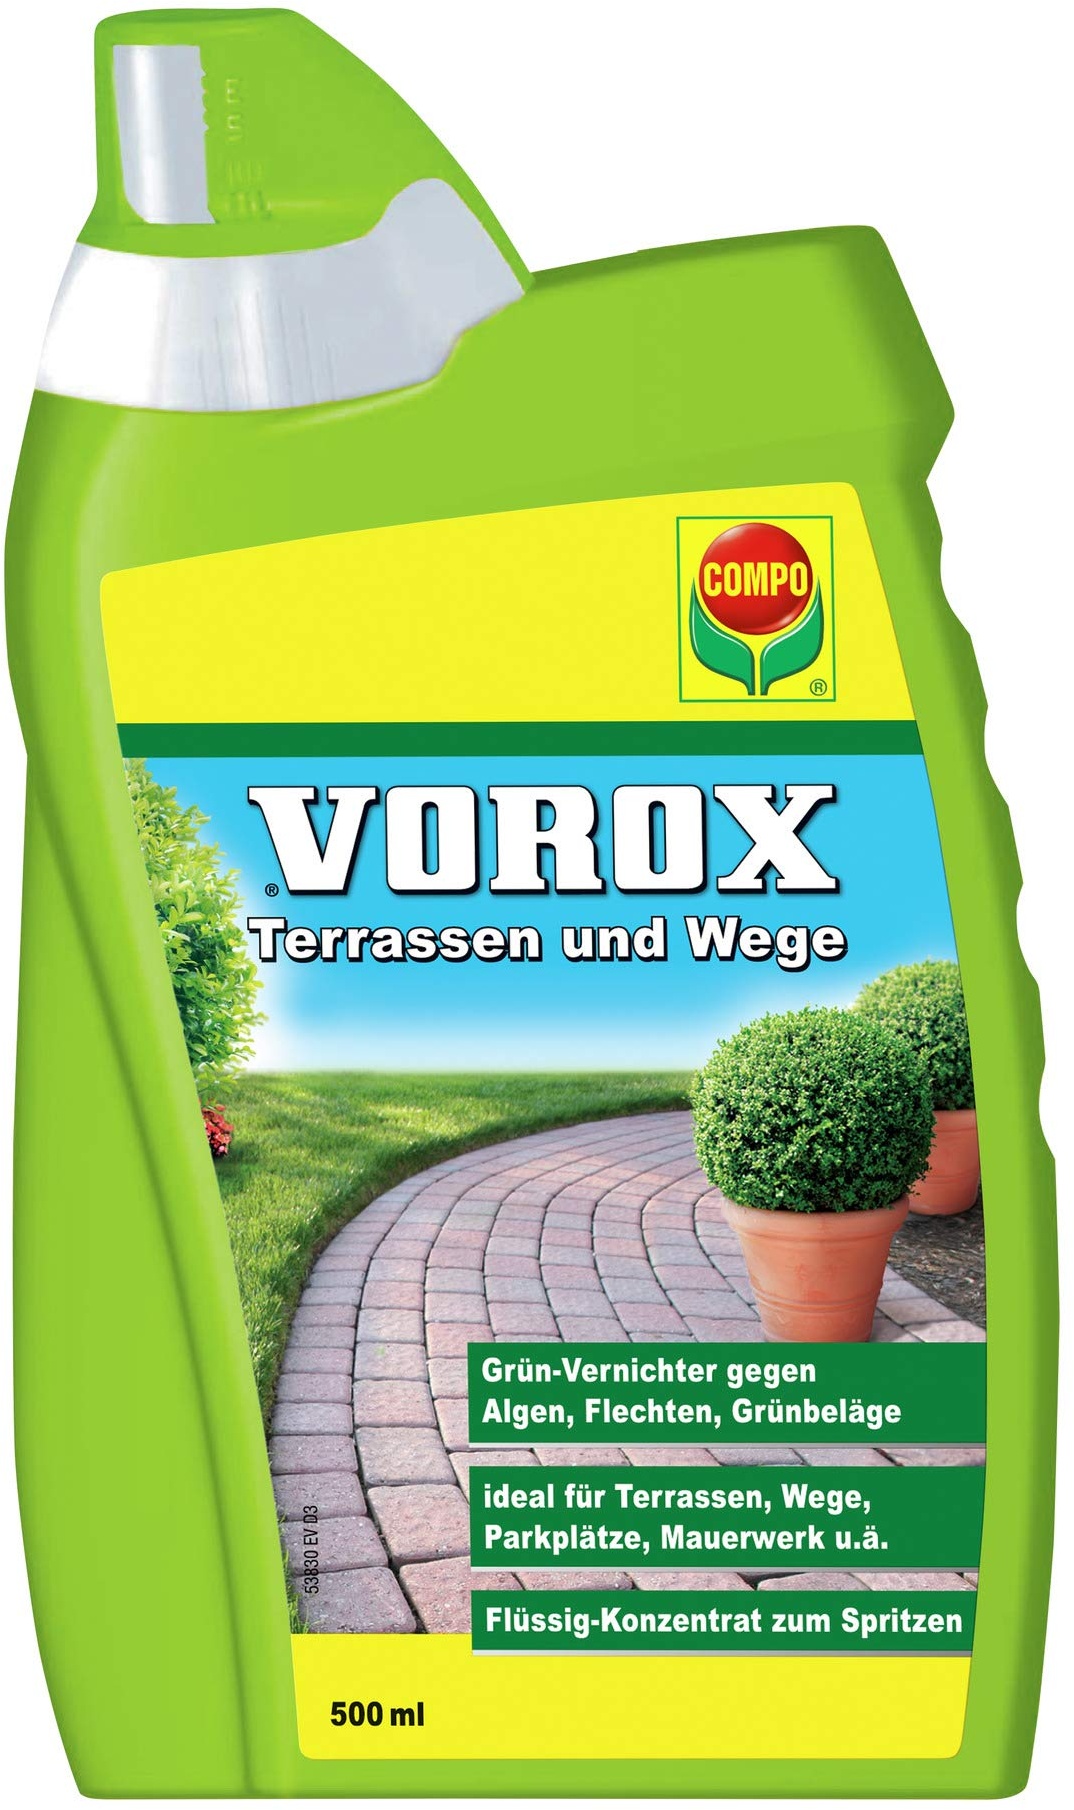 Compo VOROX Terrassen und Wege, Grünvernichter, Flüssig-Konzentrat, 500 ml